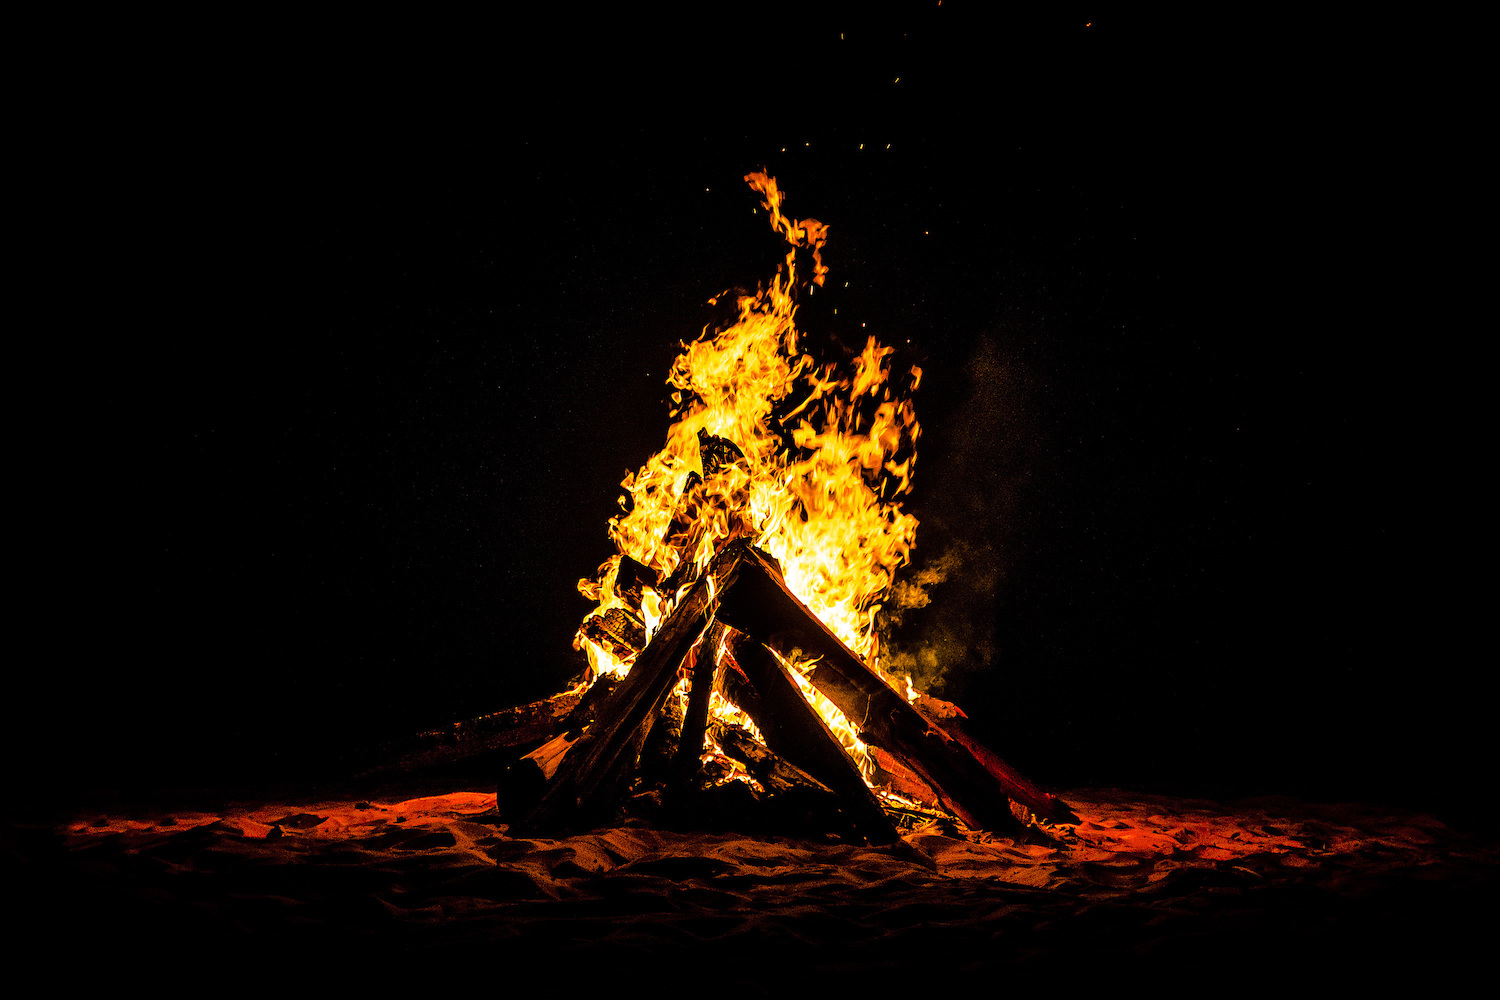 A campfire at night.